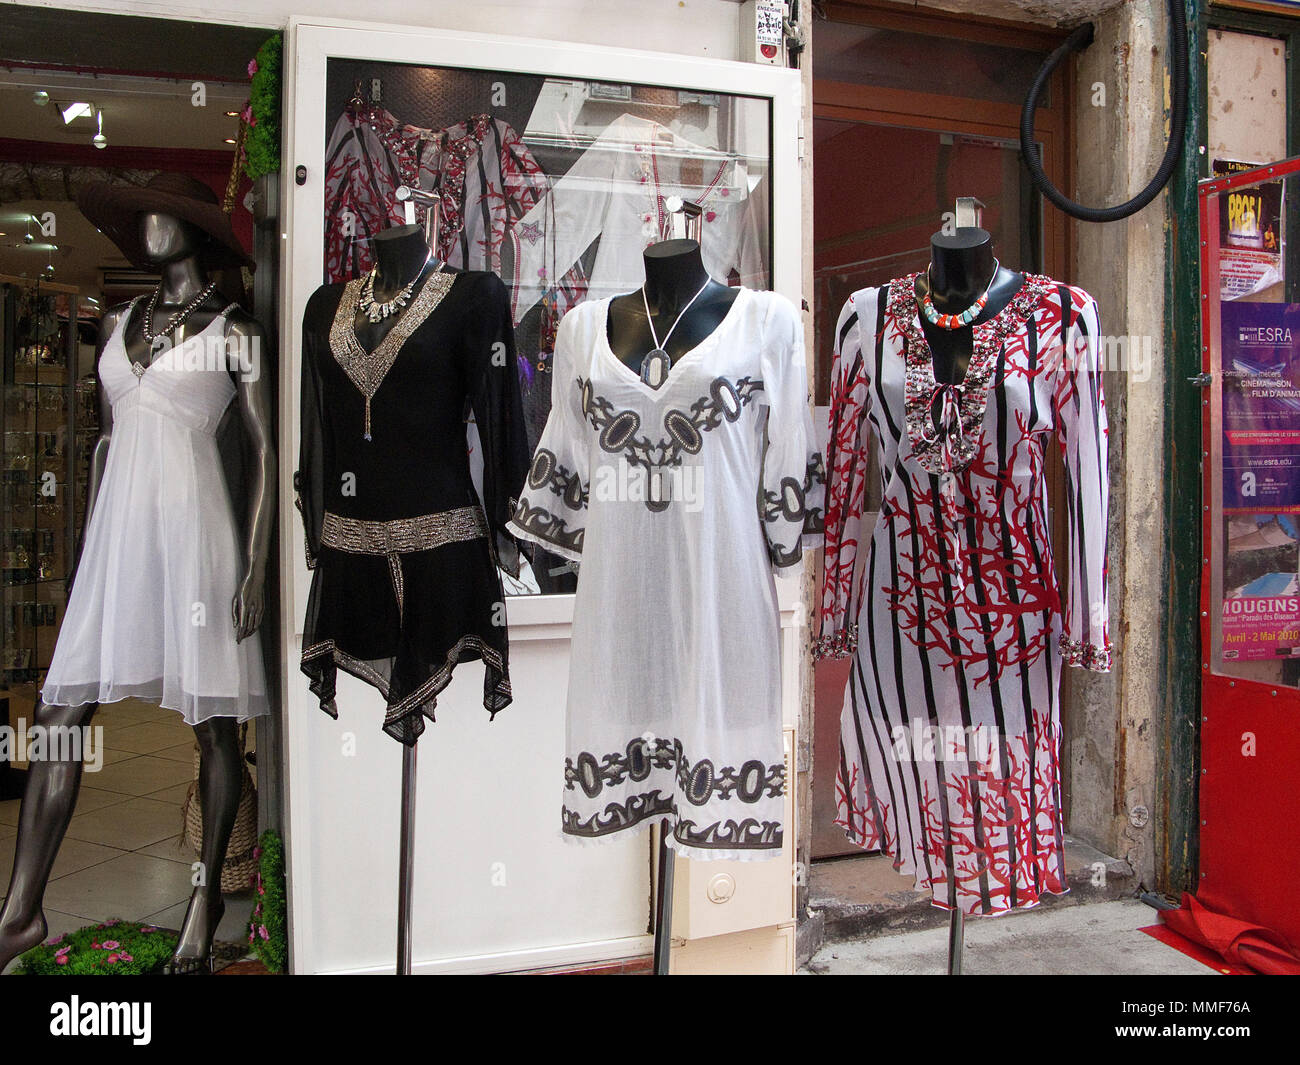 Modegeschaeft, Boutique in einer Einkaufstrasse nahe dem Place Massena, Nizza, Suedfrankreich, Alpes-Maritimes, Cote d'Azur, Frankreich, Europa, Mitte Foto Stock